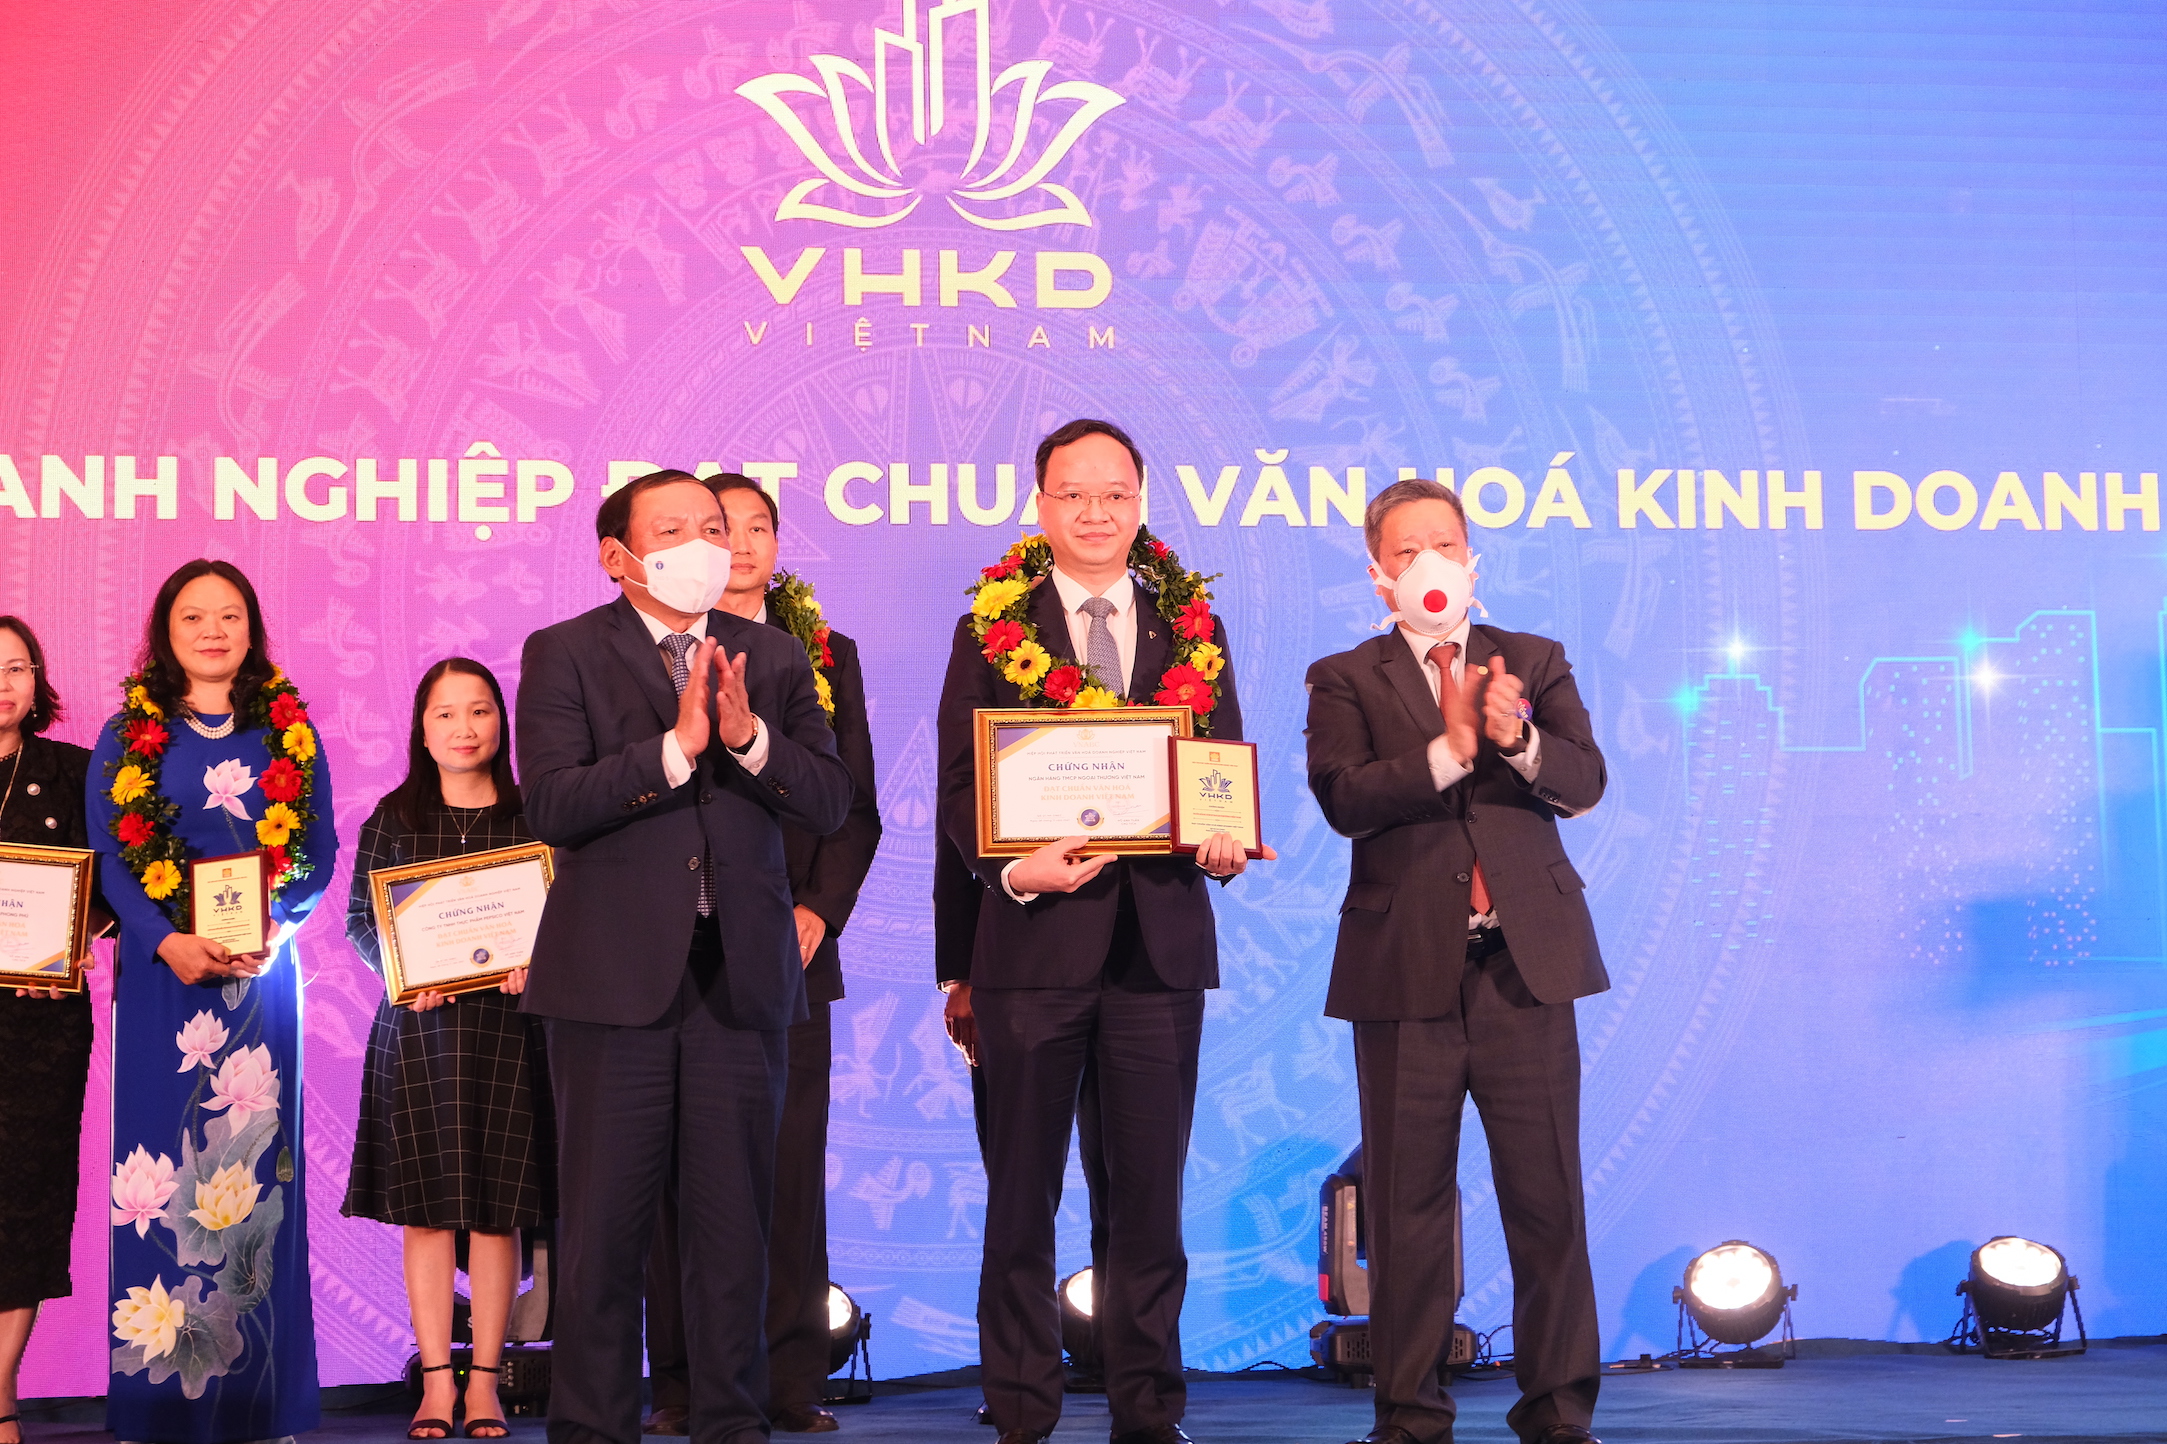 Phó Tổng Giám đốc Vietcombank Lê Quang Vinh nhận Chứng nhận doanh nghiệp đạt chuẩn văn hóa kinh doanh Việt Nam và kỷ niệm chương từ Ban Tổ chức chương trình.